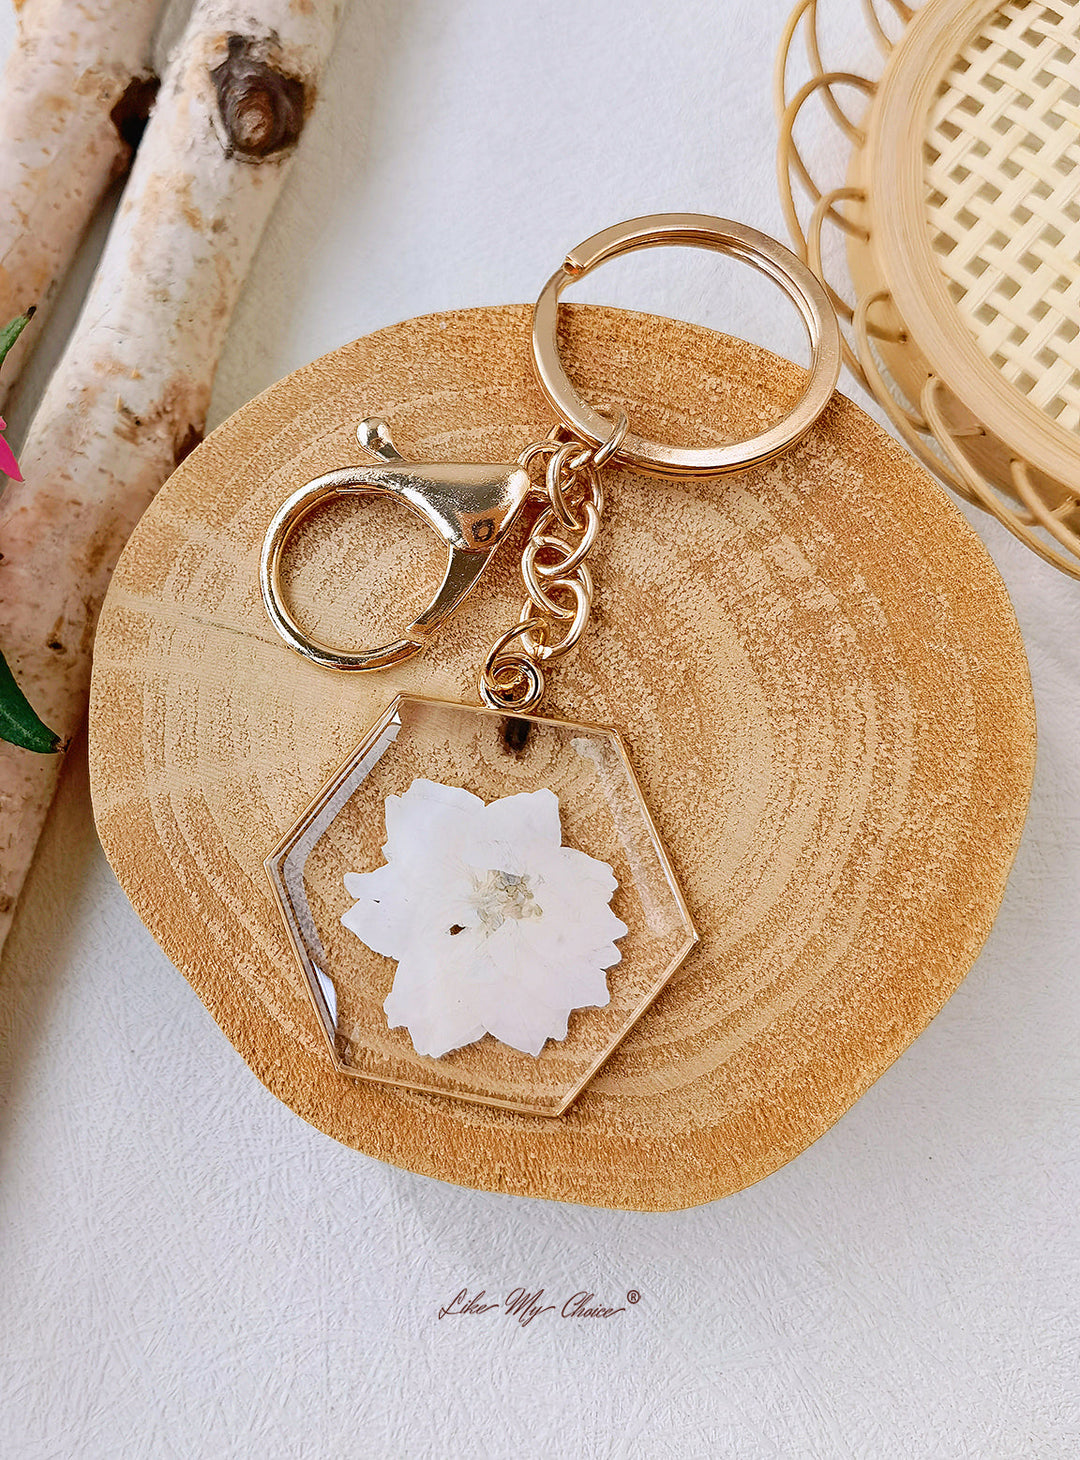 Enchanting White Rose Keychain